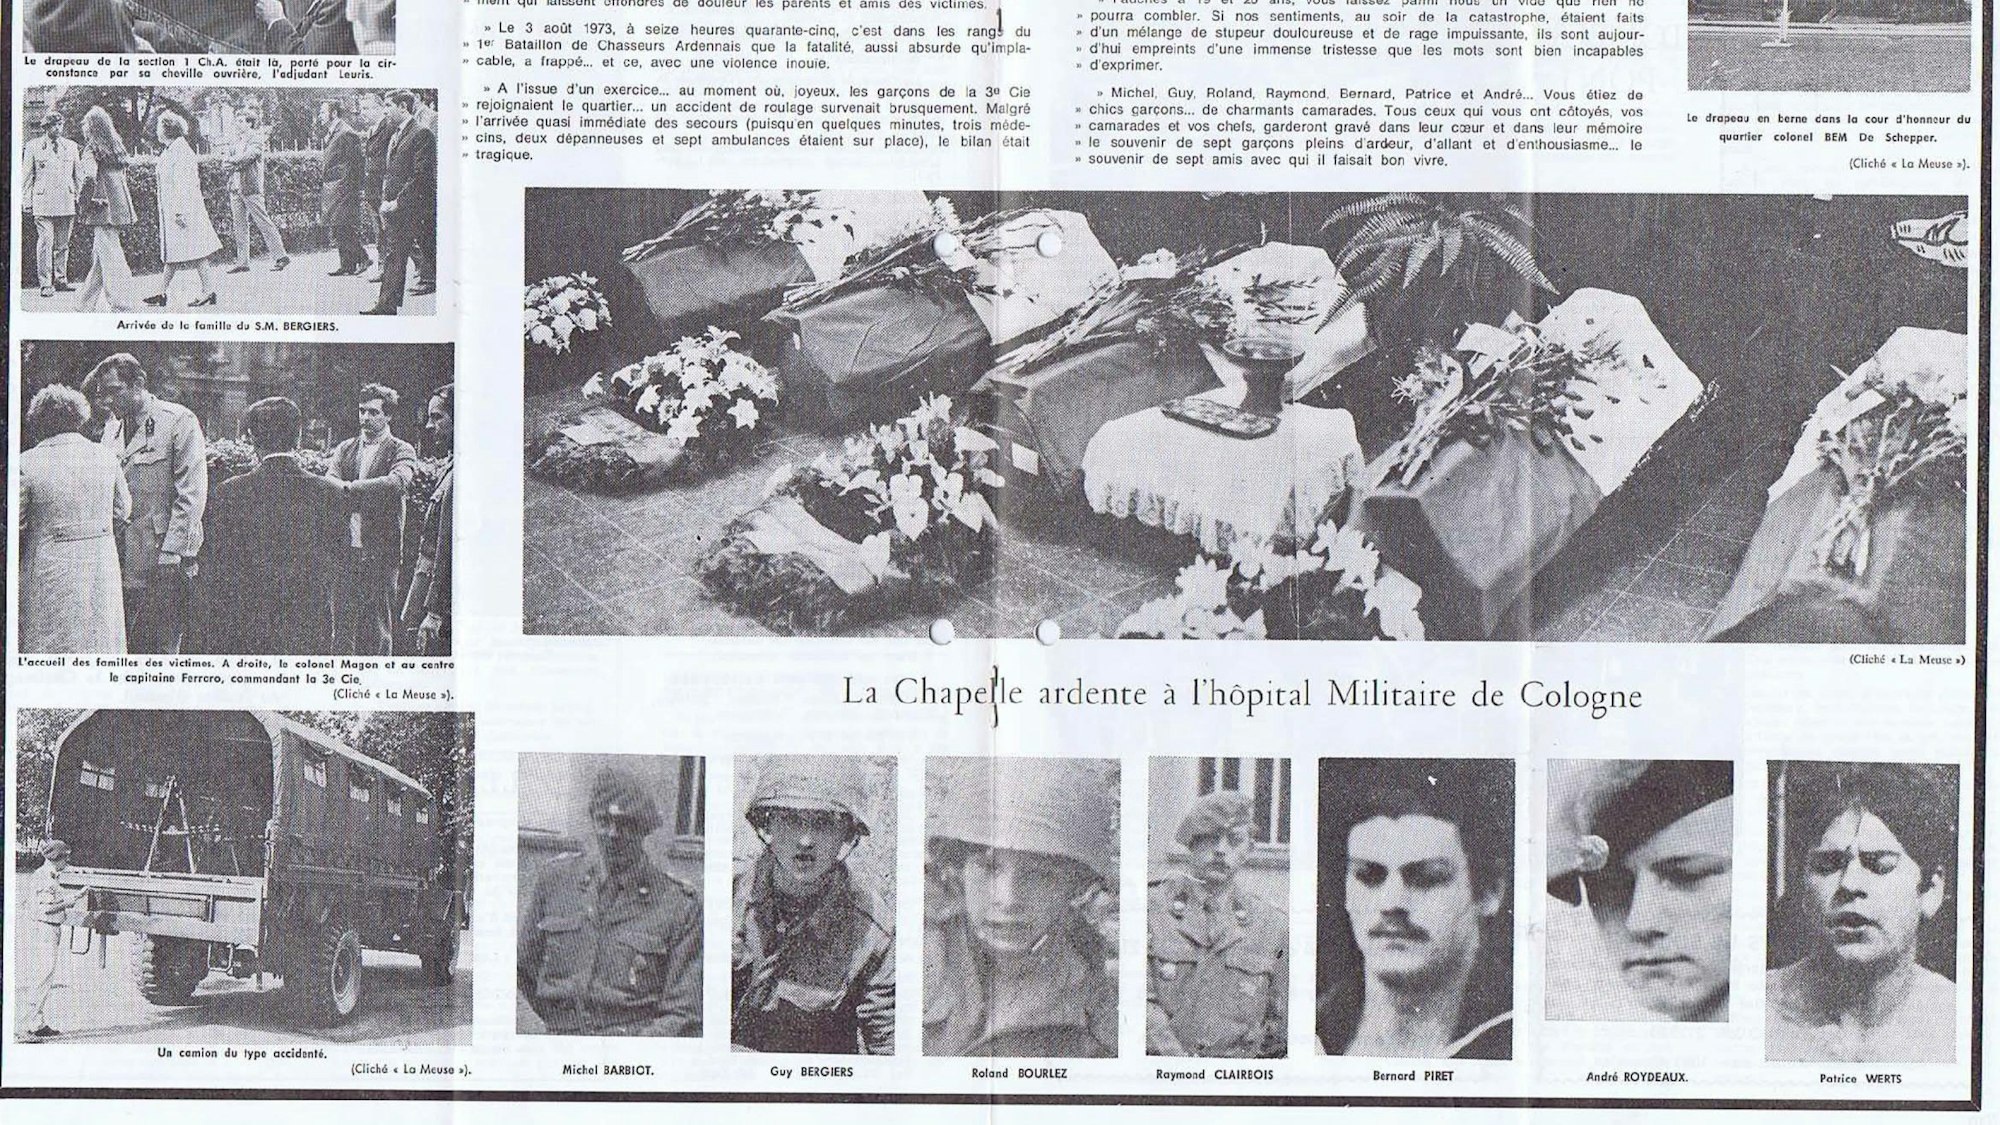 Ausführlich berichtete die belgische Regimentszeitschrift über das Unglück in Spich. Sie zeigte Eindrücke von der Trauerfeier, eine Abbildung des verunglückten Mannschaftswagens und die Fotos aller sieben ums Leben gekommenen Soldaten.